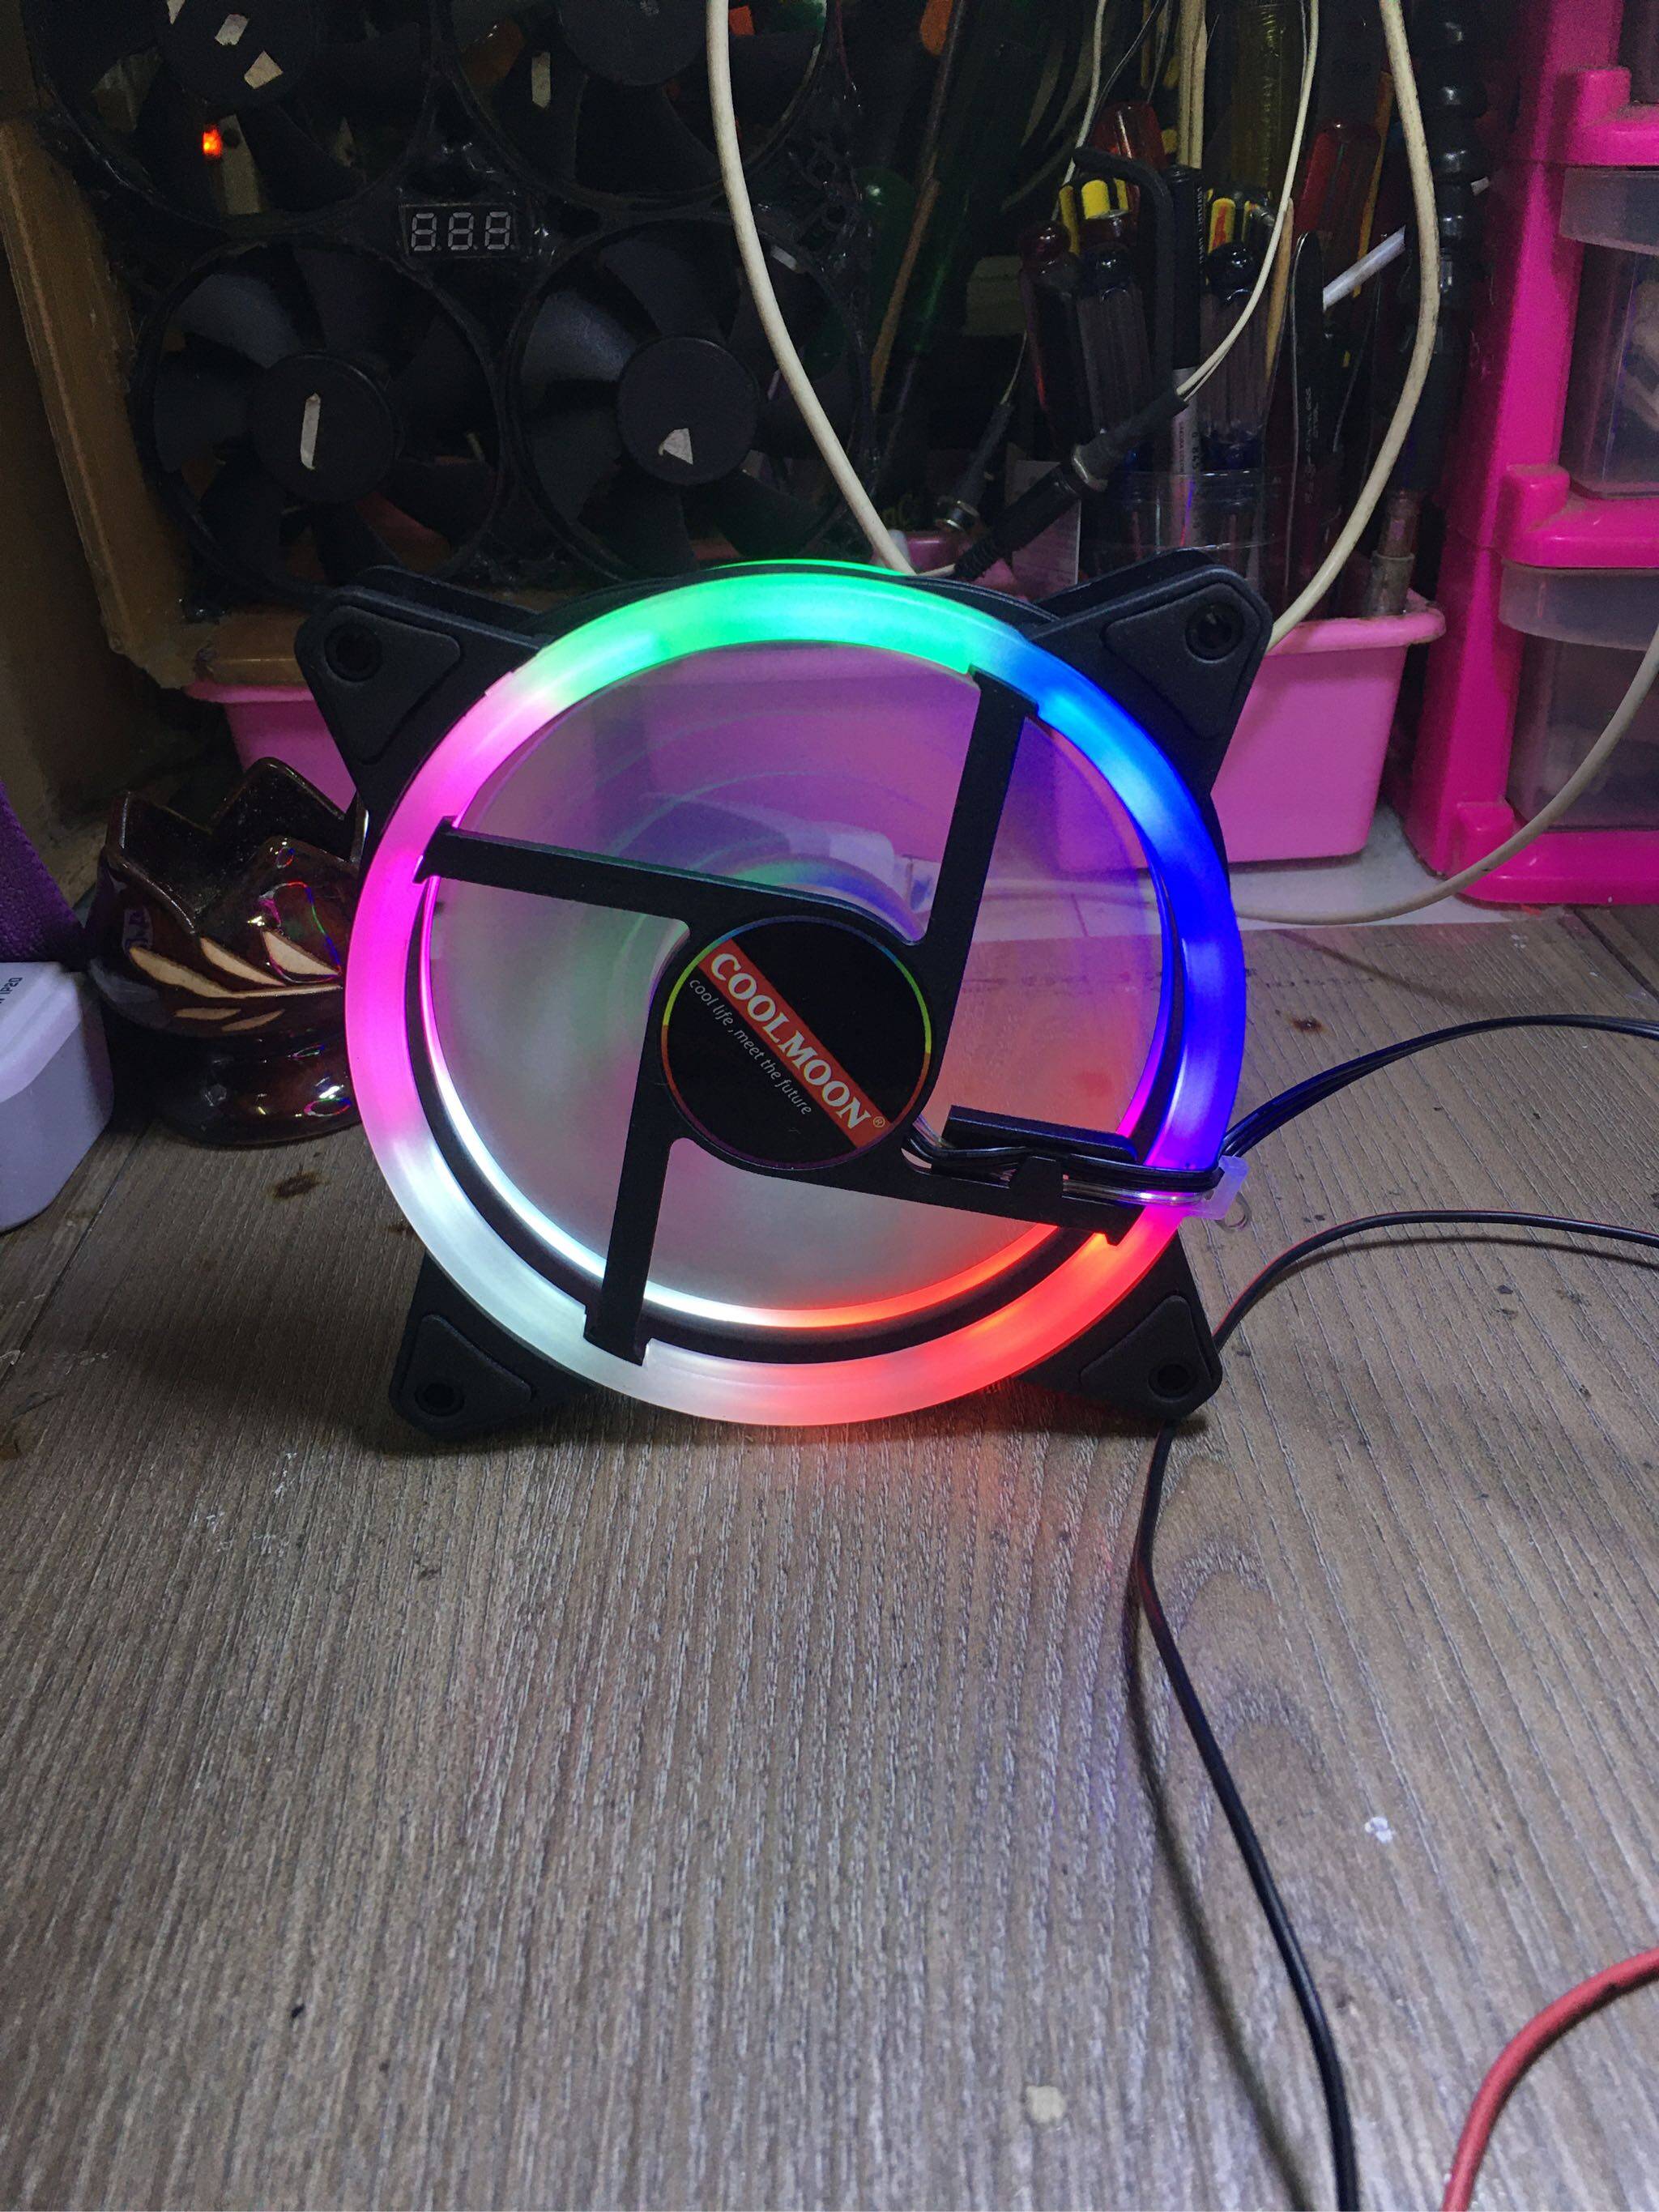 รายละเอียดเพิ่มเติมเกี่ยวกับ 【กรุงเทพจัดส่งที่รวดเร็ว】color กรณี RGB วงกลมระบายความร้อน 2 แหวน cpu led พัดลม 120 มิลลิเมตร 12 เซนติเมตร RGB LED แหวนสำหรับคอมพิวเตอร์เมนบอร์ดคูลเลอร์น้ำหม้อน้ำเย็น ความเร็ว 1200